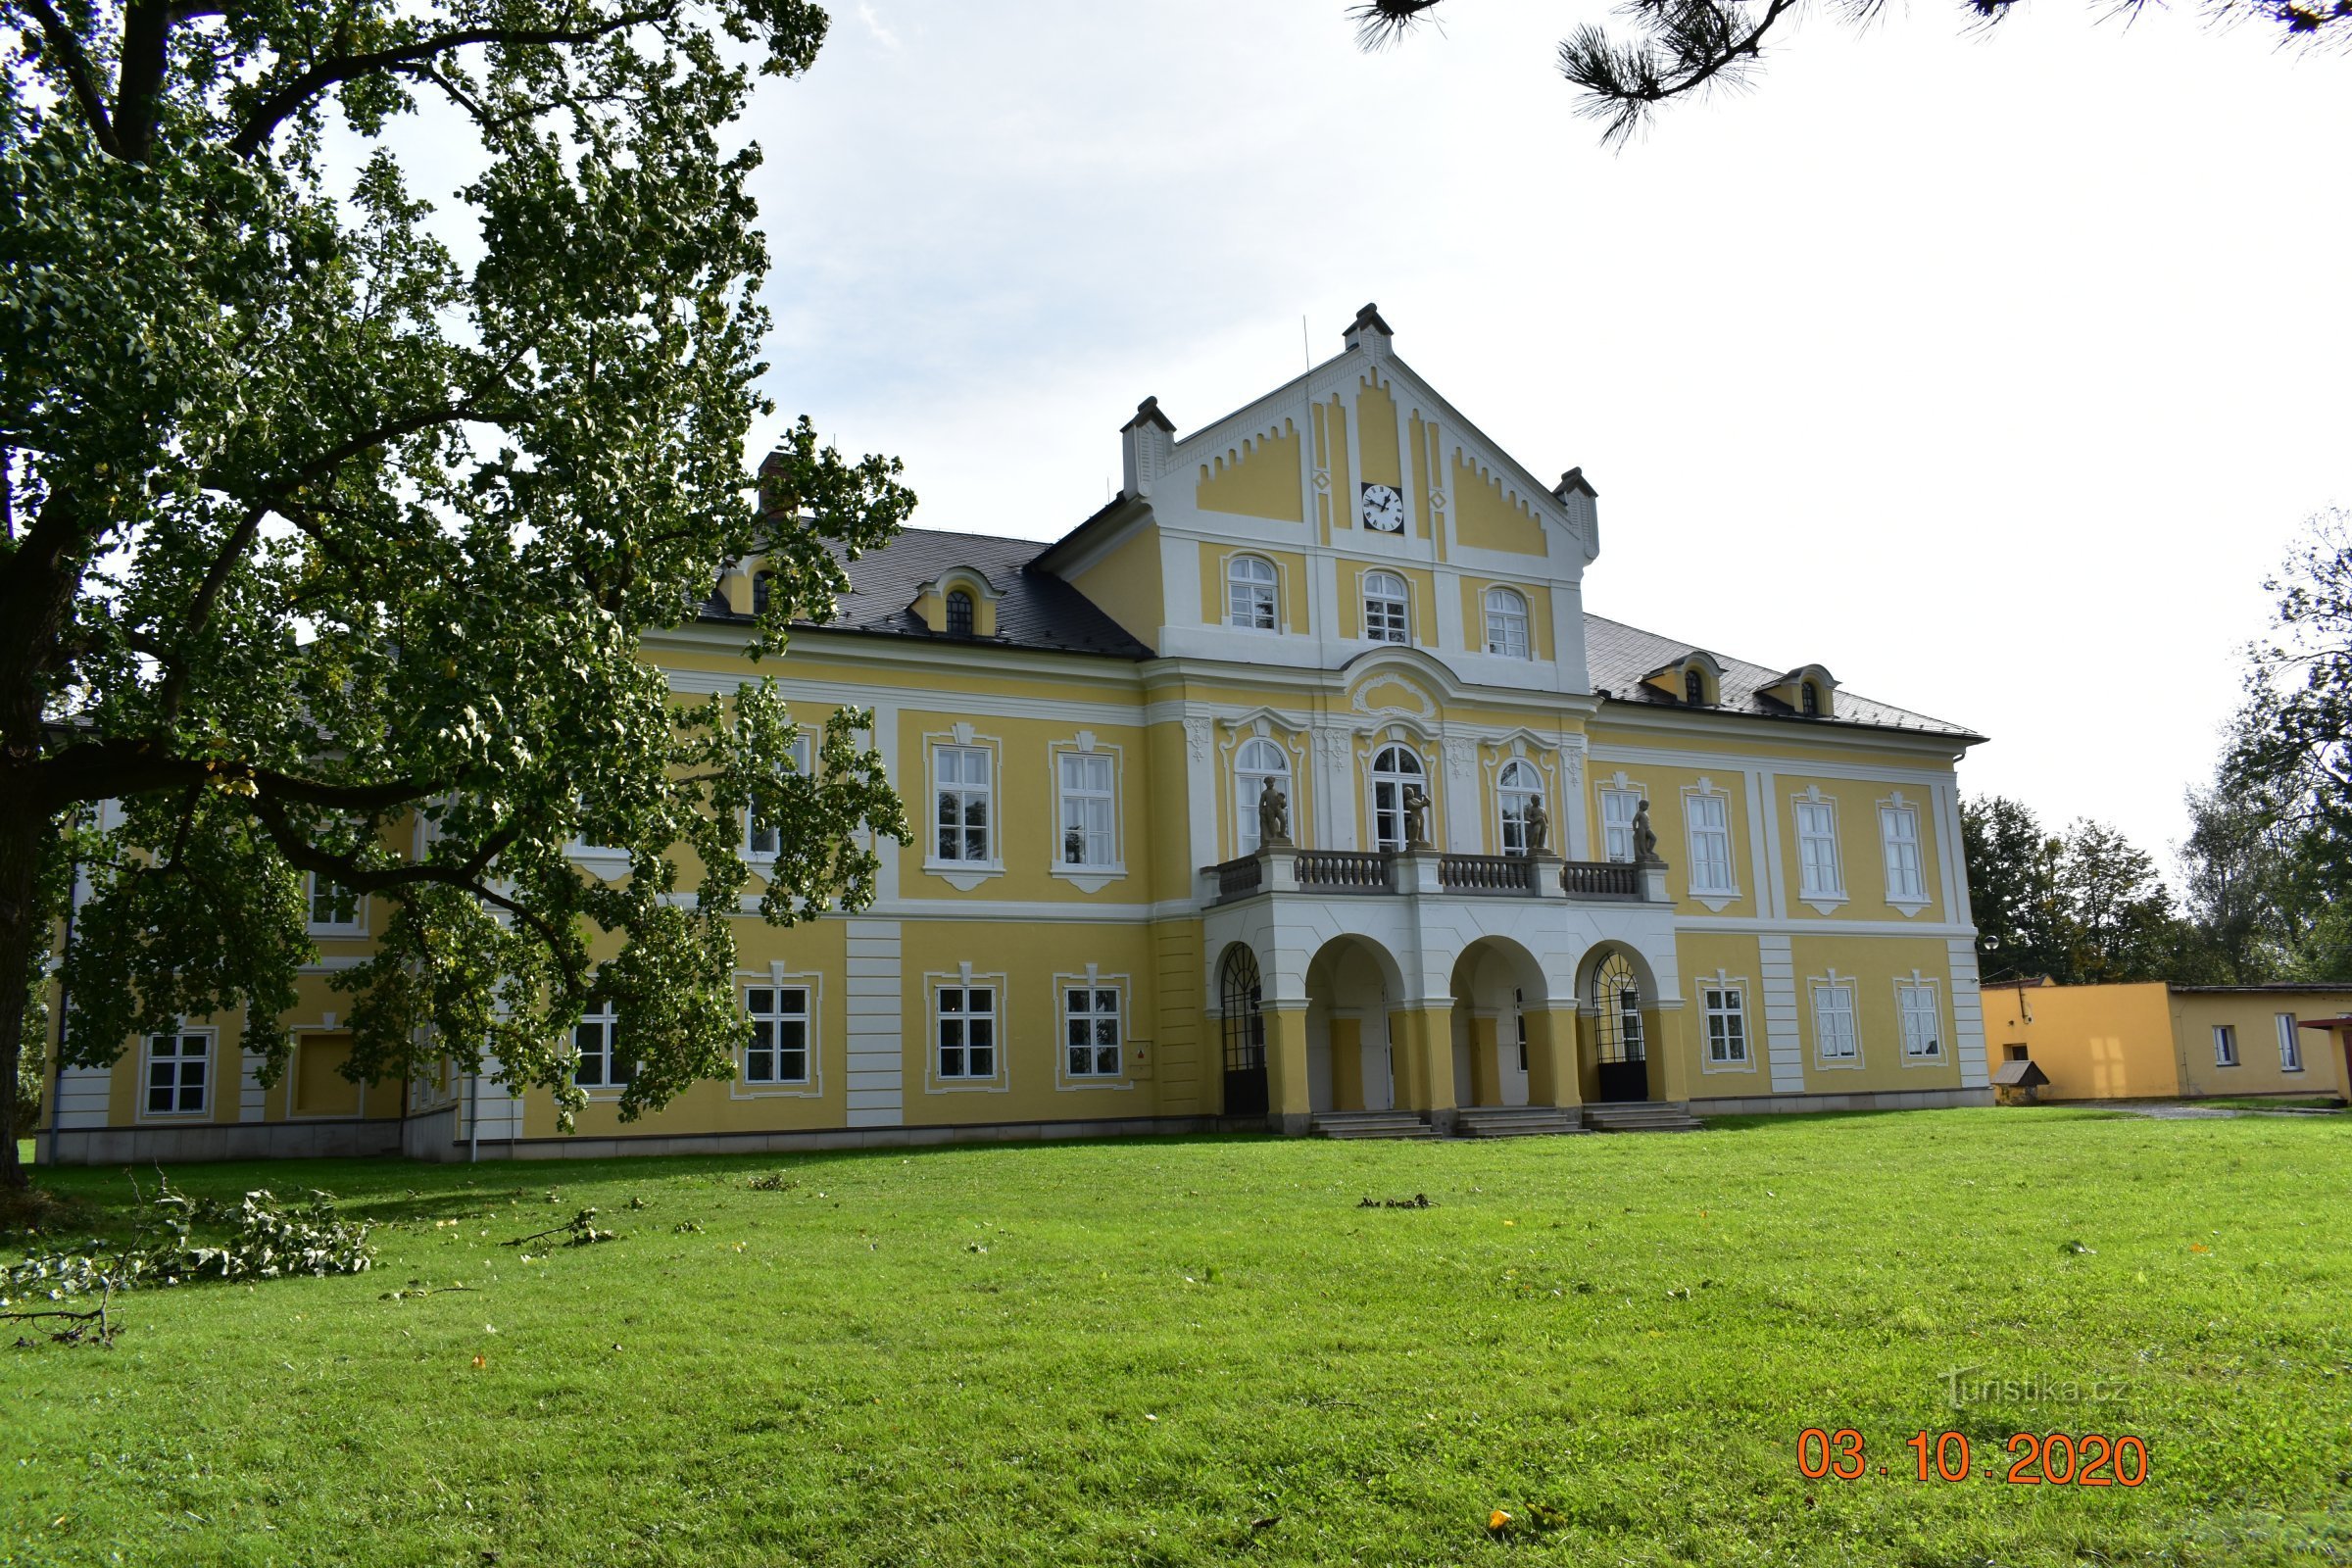 Nová Horka Castle in Studénka (opened on September 28.9.2020, XNUMX)